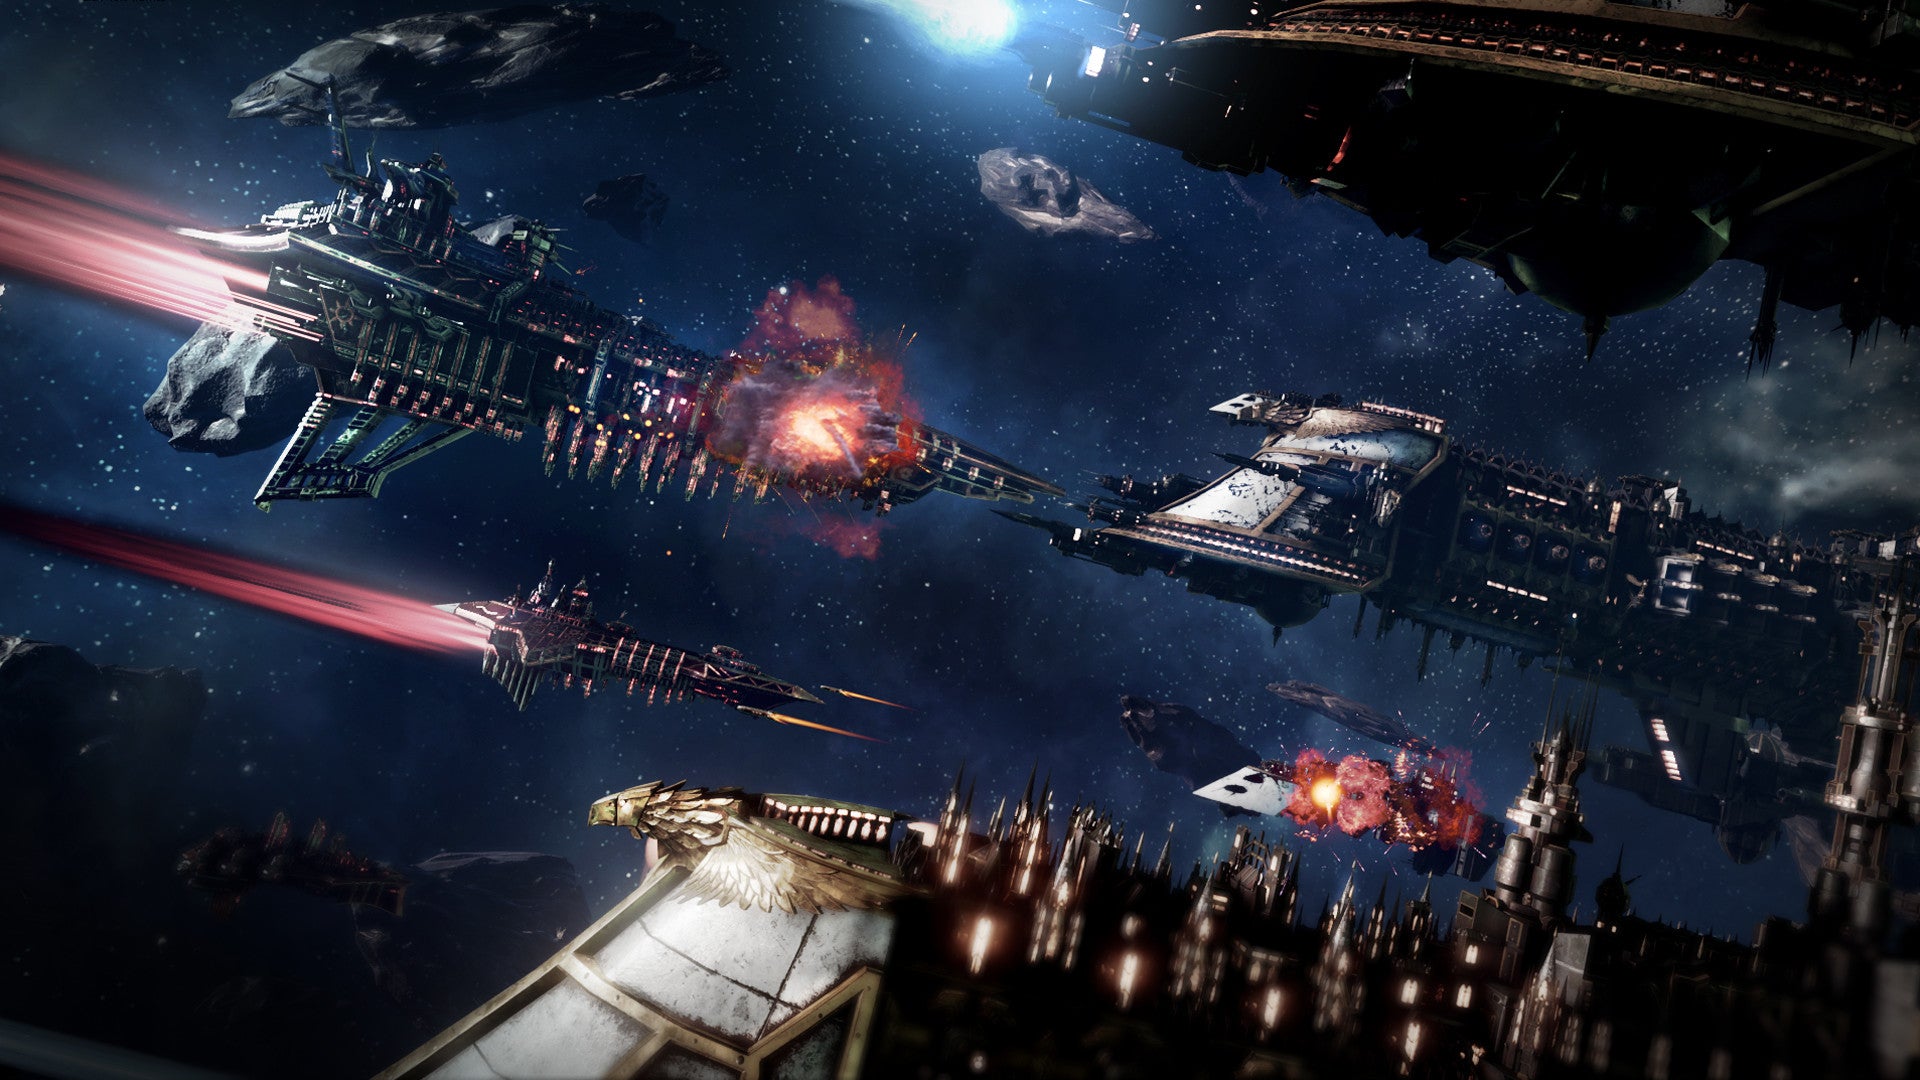 Battlefleet Gothic Armada Cd Key Buy Online - khaos imperium roblox